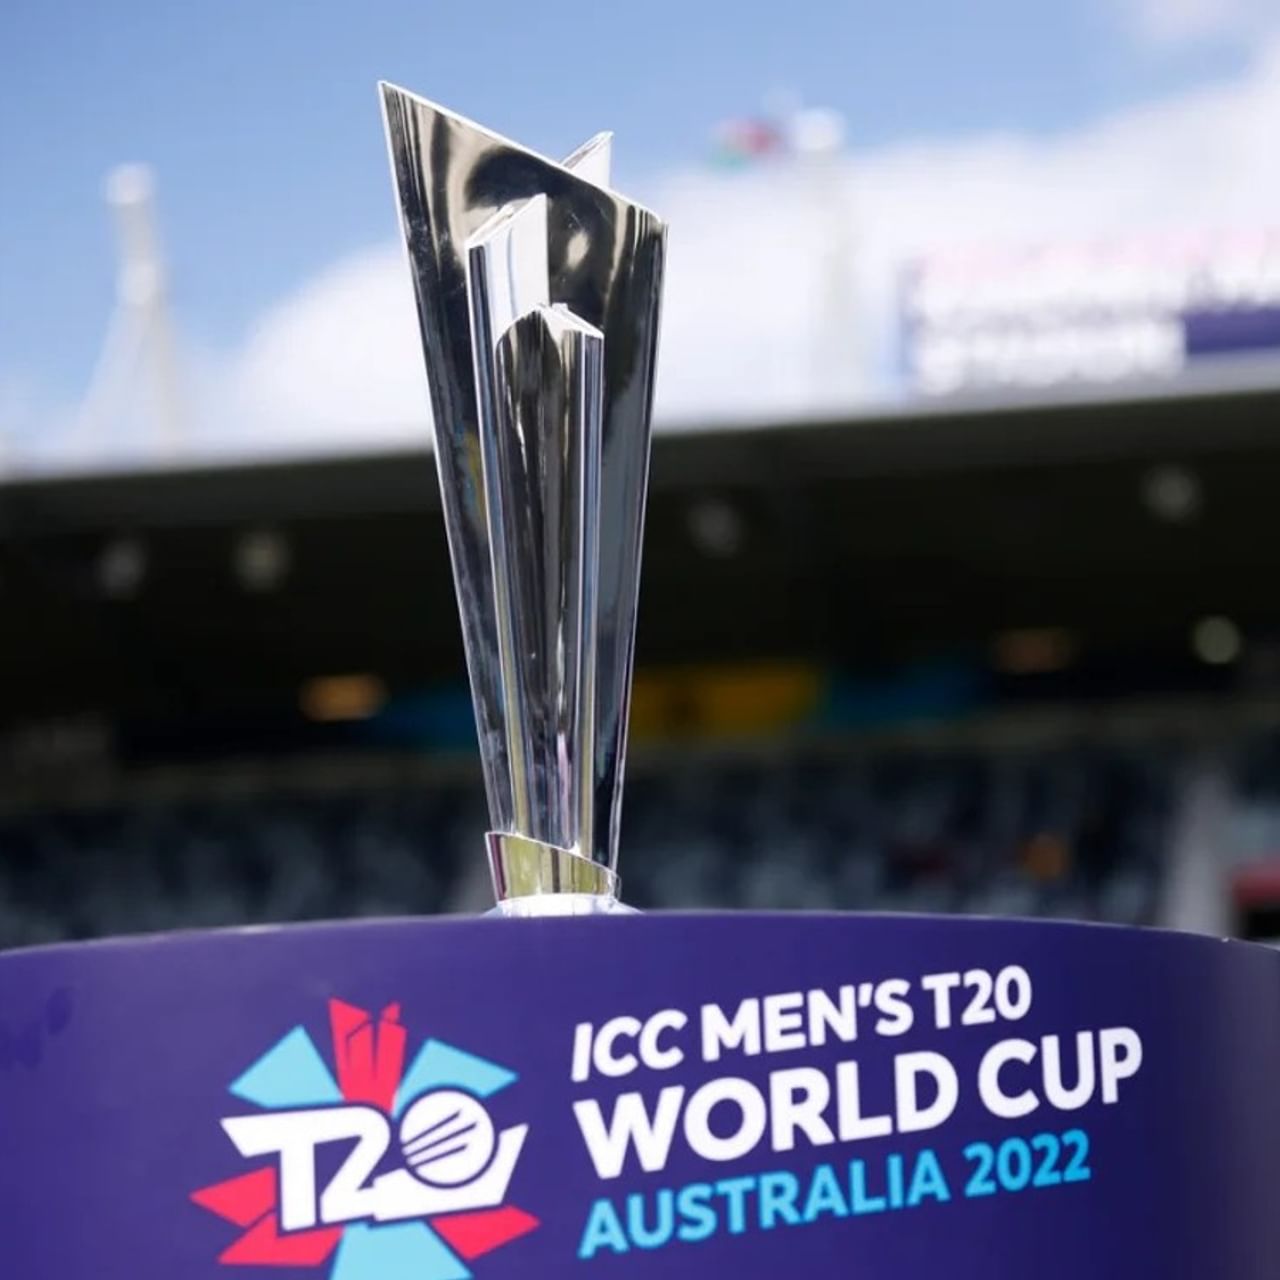 এ বারের টি২০ বিশ্বকাপের (T20 World Cup 2022) গ্রুপ পর্বের শেষে পাওয়া গেল, সেই চার দল যারা পৌঁছে গেল সুপার-১২-তে। এক ঝলকে দেখে নিন কুড়ি-বিশের বিশ্বকাপের মূল পর্বে খেলবে যে চারটি দল... (ছবি-আইসিসি টুইটার)